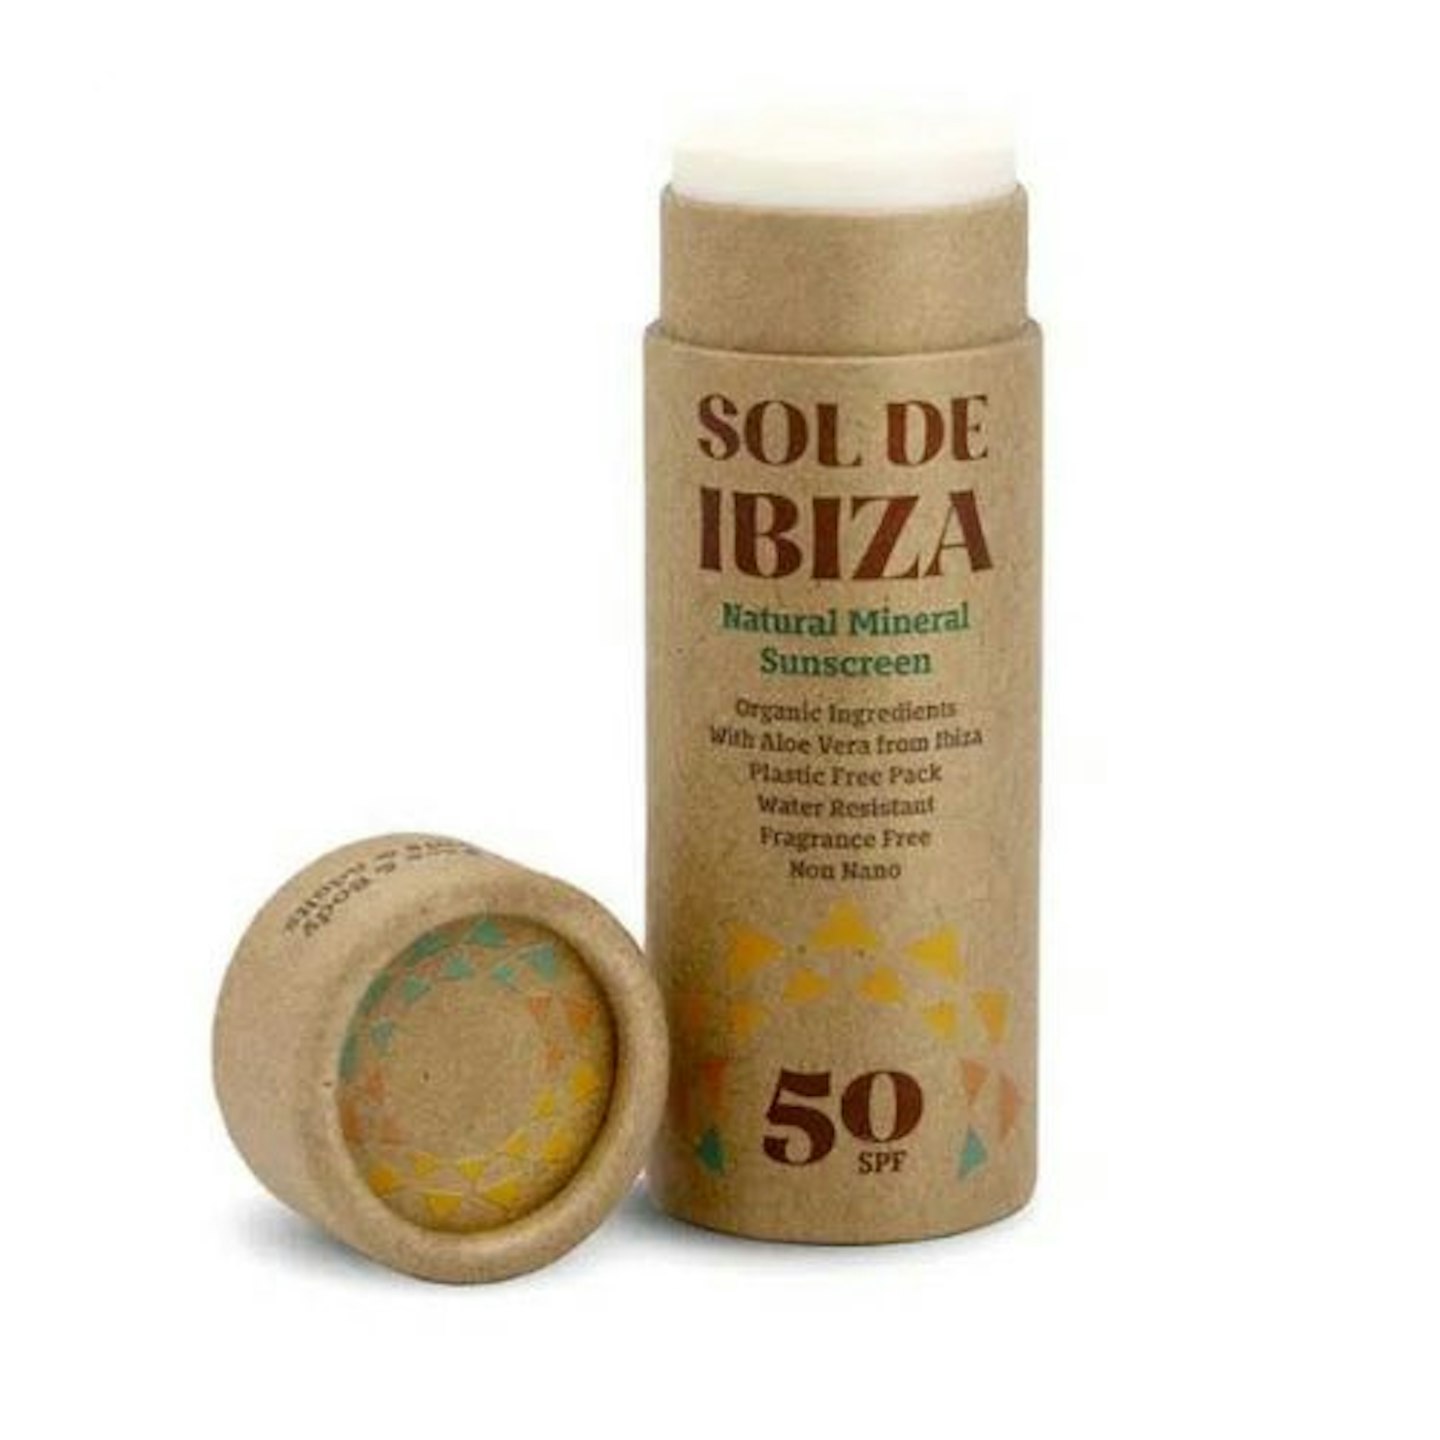 Sol De Ibiza Face & Body Sunscreen Stick